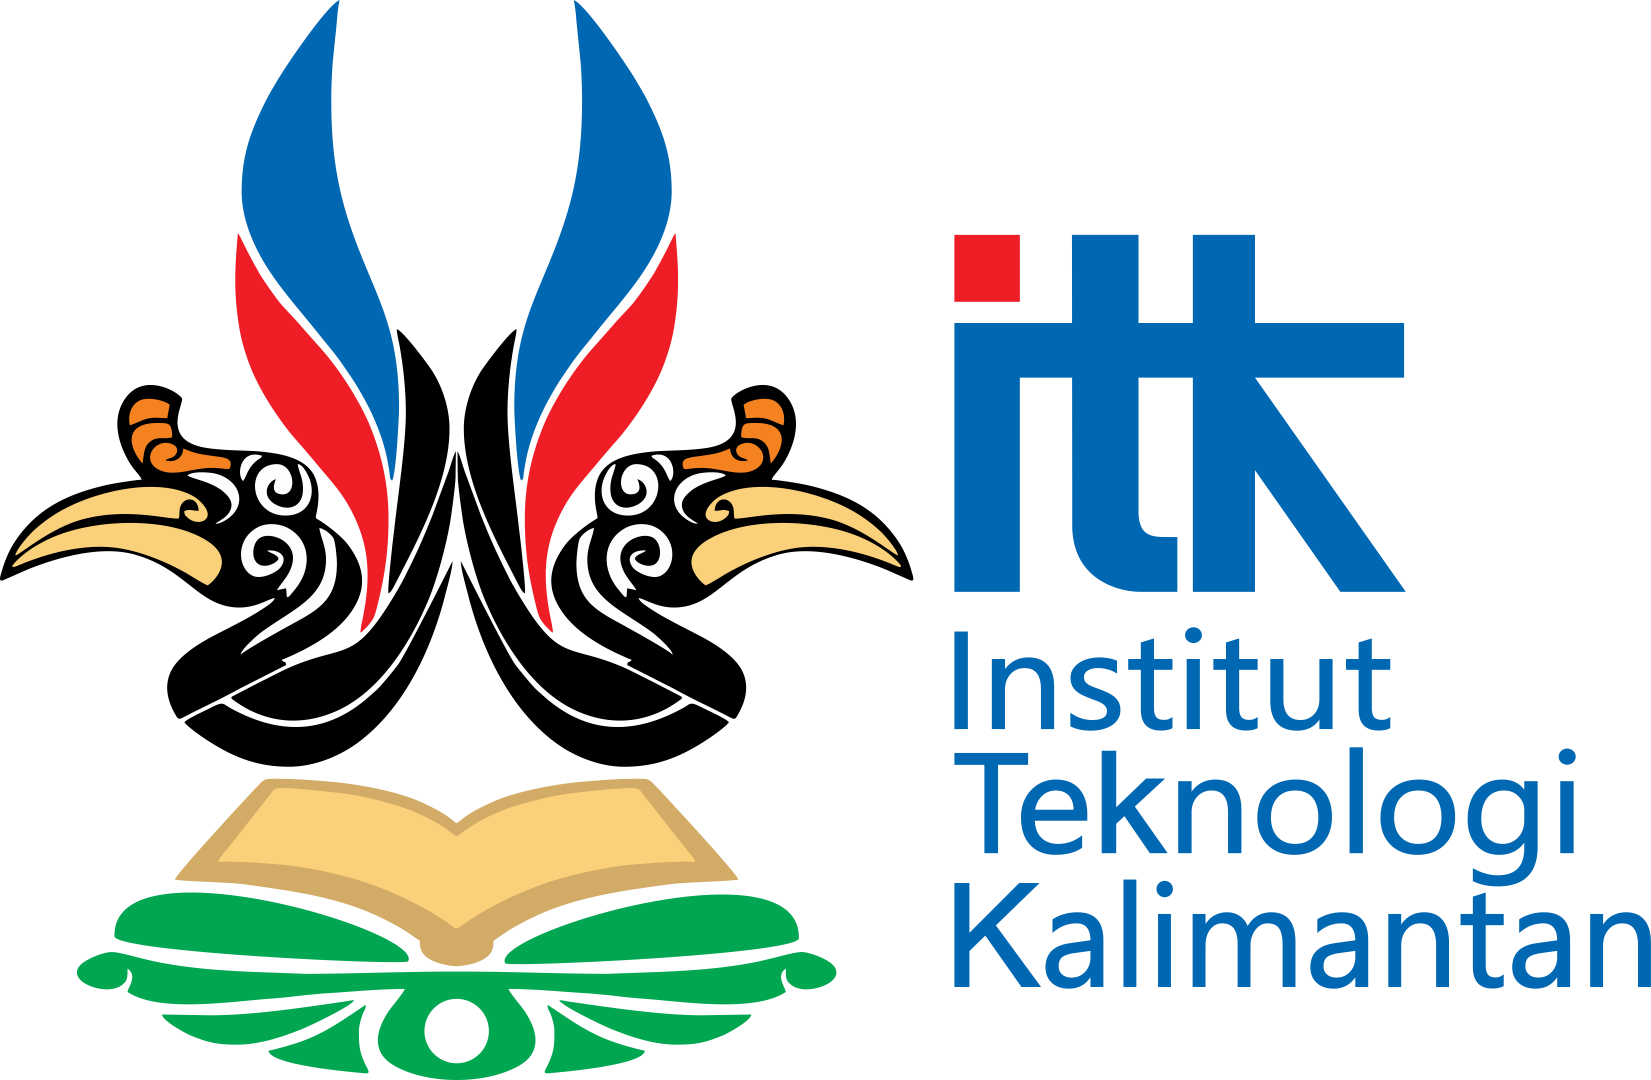 Institut Teknologi Kalimantan